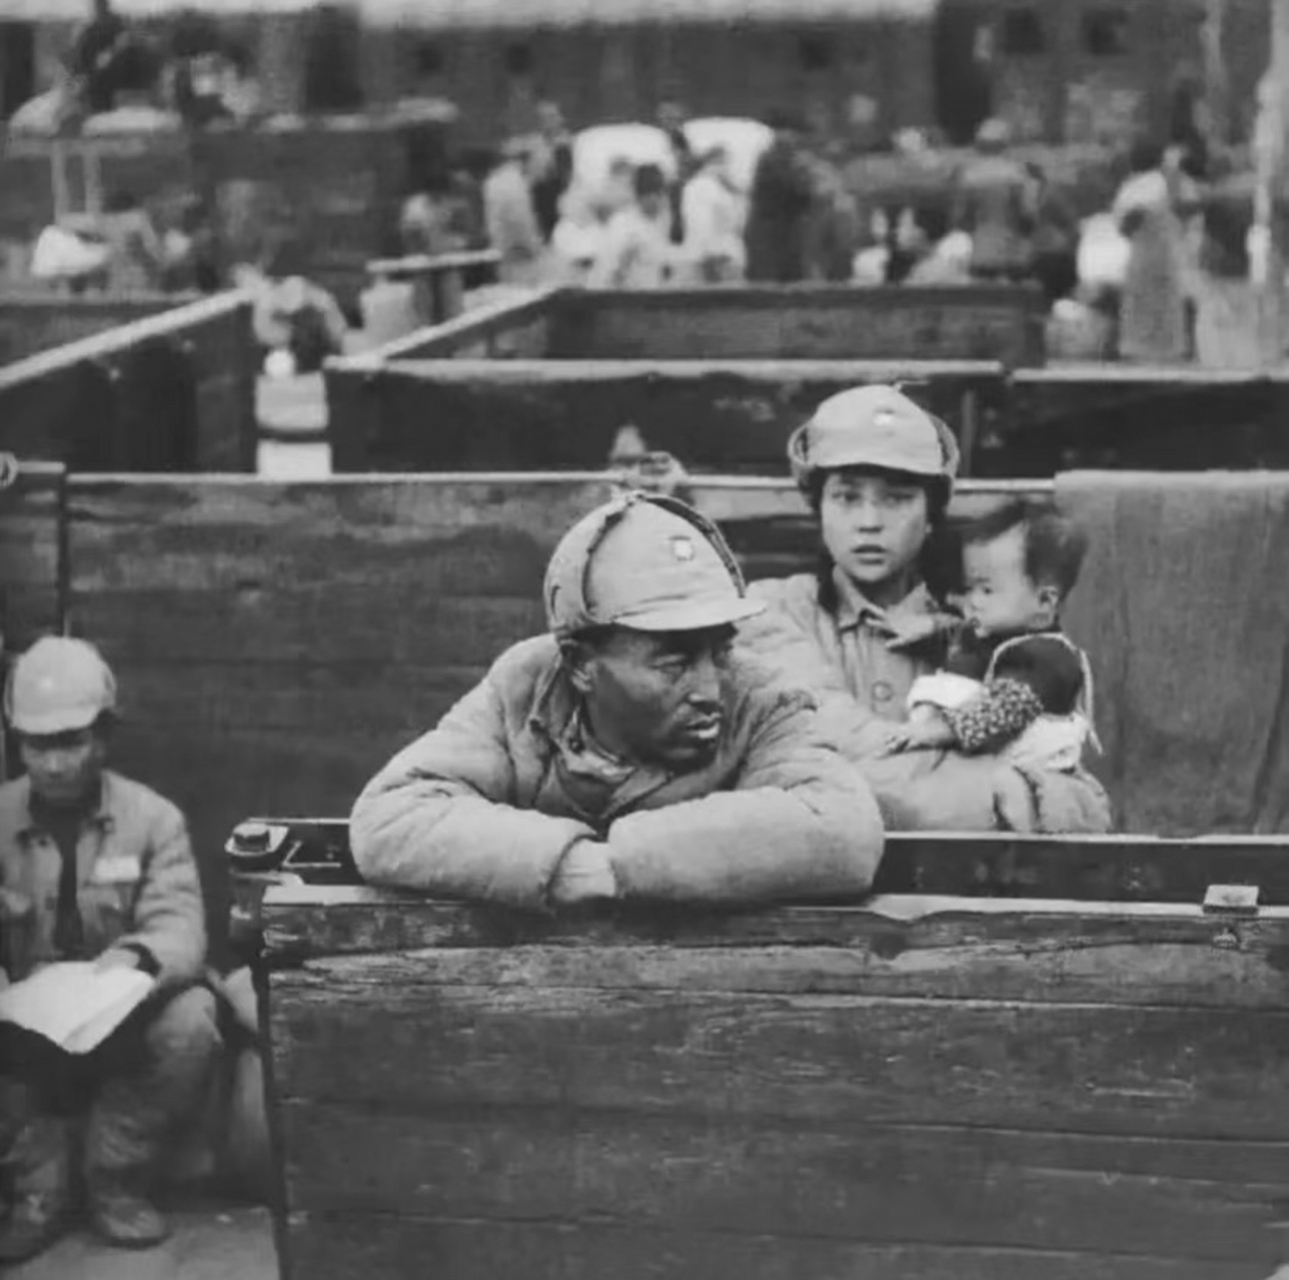 这是一张1949年,国民党撤退台湾时的老照片,其中一位女兵怀抱一个小